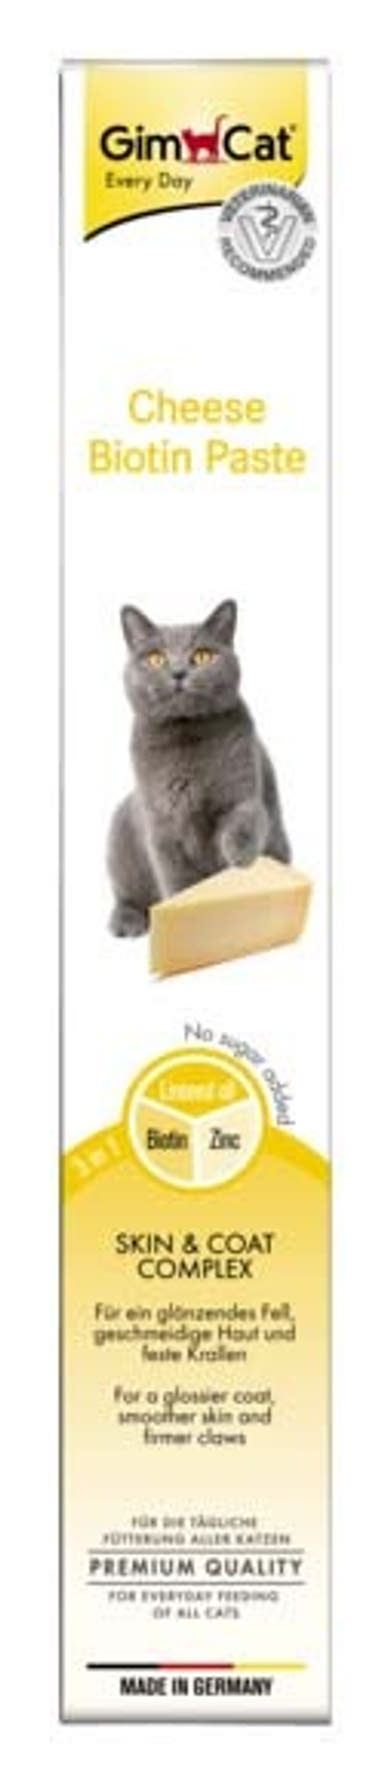 GimCat macska paszta biotin sajtos